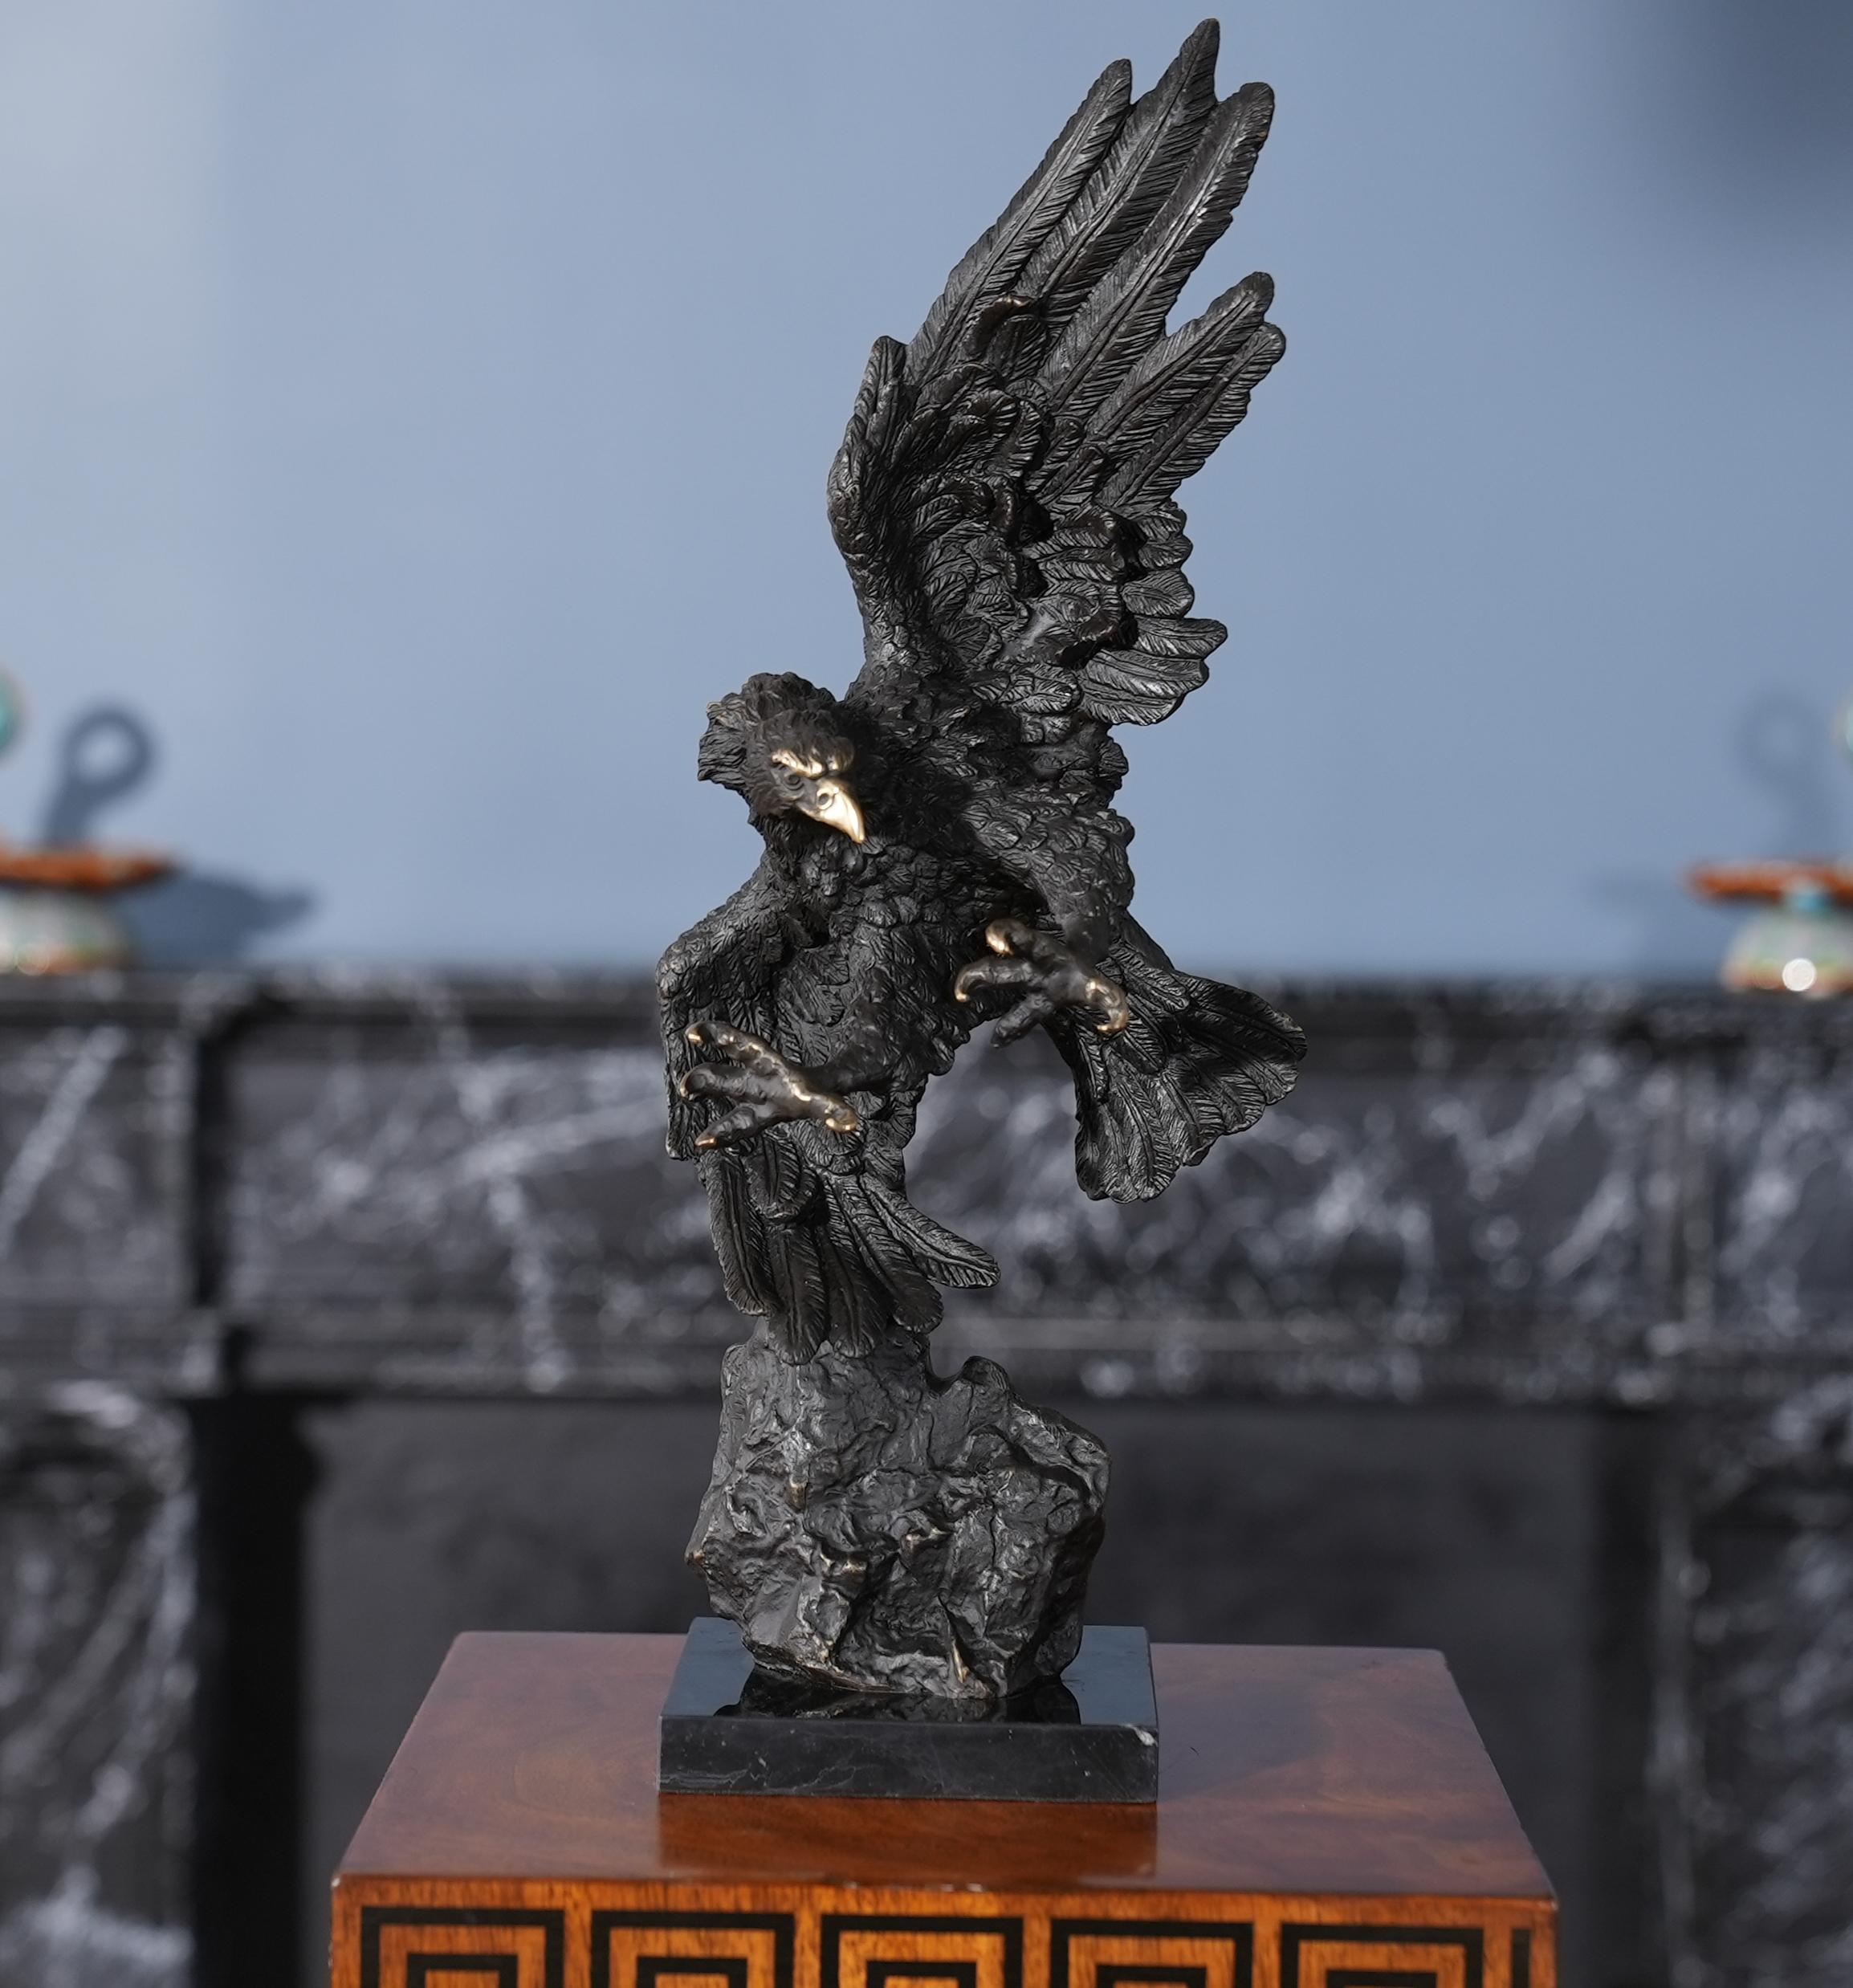 Der fliegende Adler aus Bronze auf einem Marmorsockel ist selbst im Stillstand eine beeindruckende Ergänzung für jede Umgebung. Der Bronzeadler wird im traditionellen Wachsausschmelzverfahren in Einzelteile zerlegt und dann durch Hartlöten